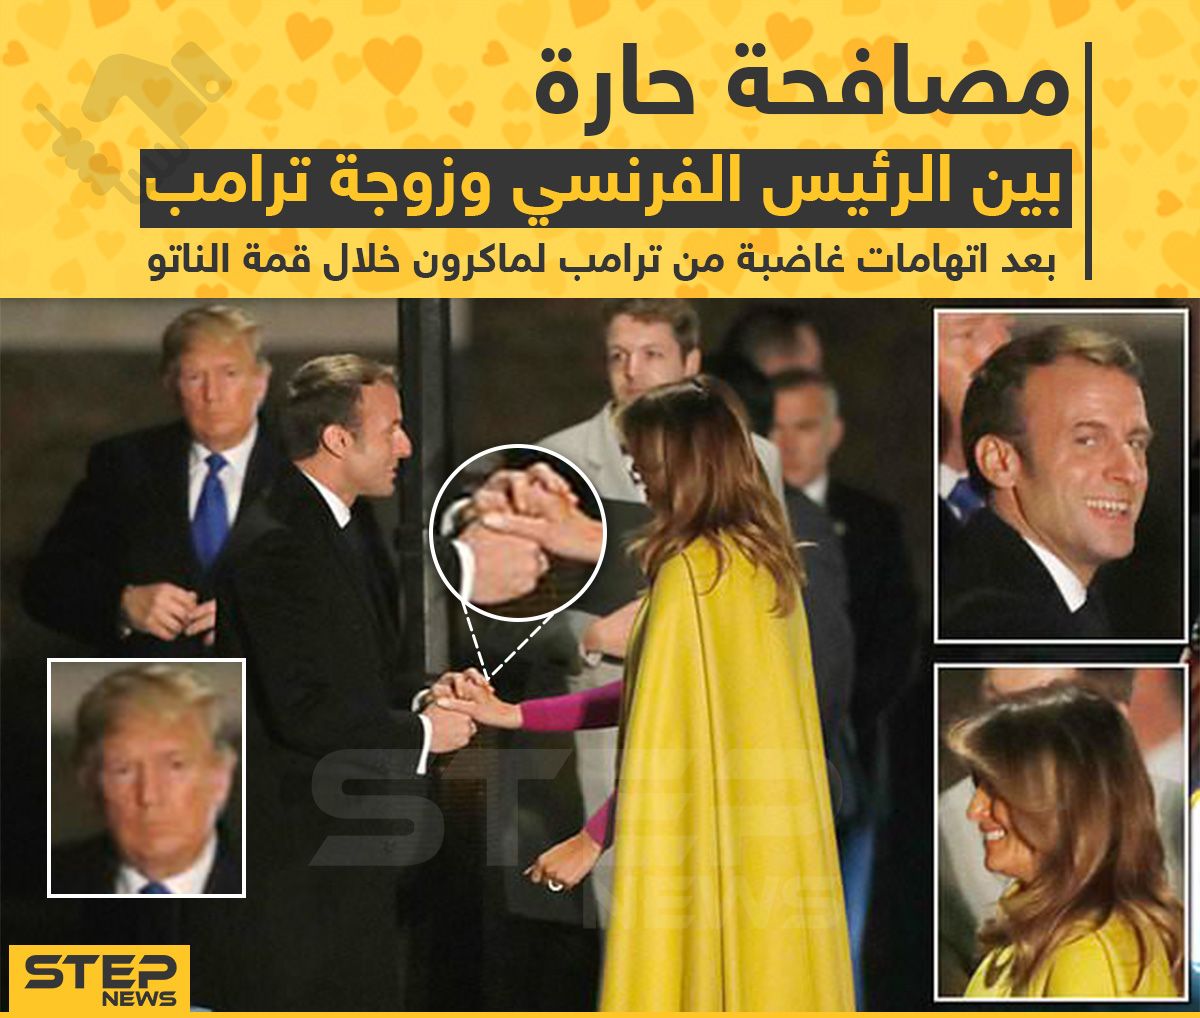 مصافحة حارّة بين الرئيس الفرنسي وزوجة ترامب بعد اتهامات غاضبة من ترامب لماكرون خلال قمة الناتو